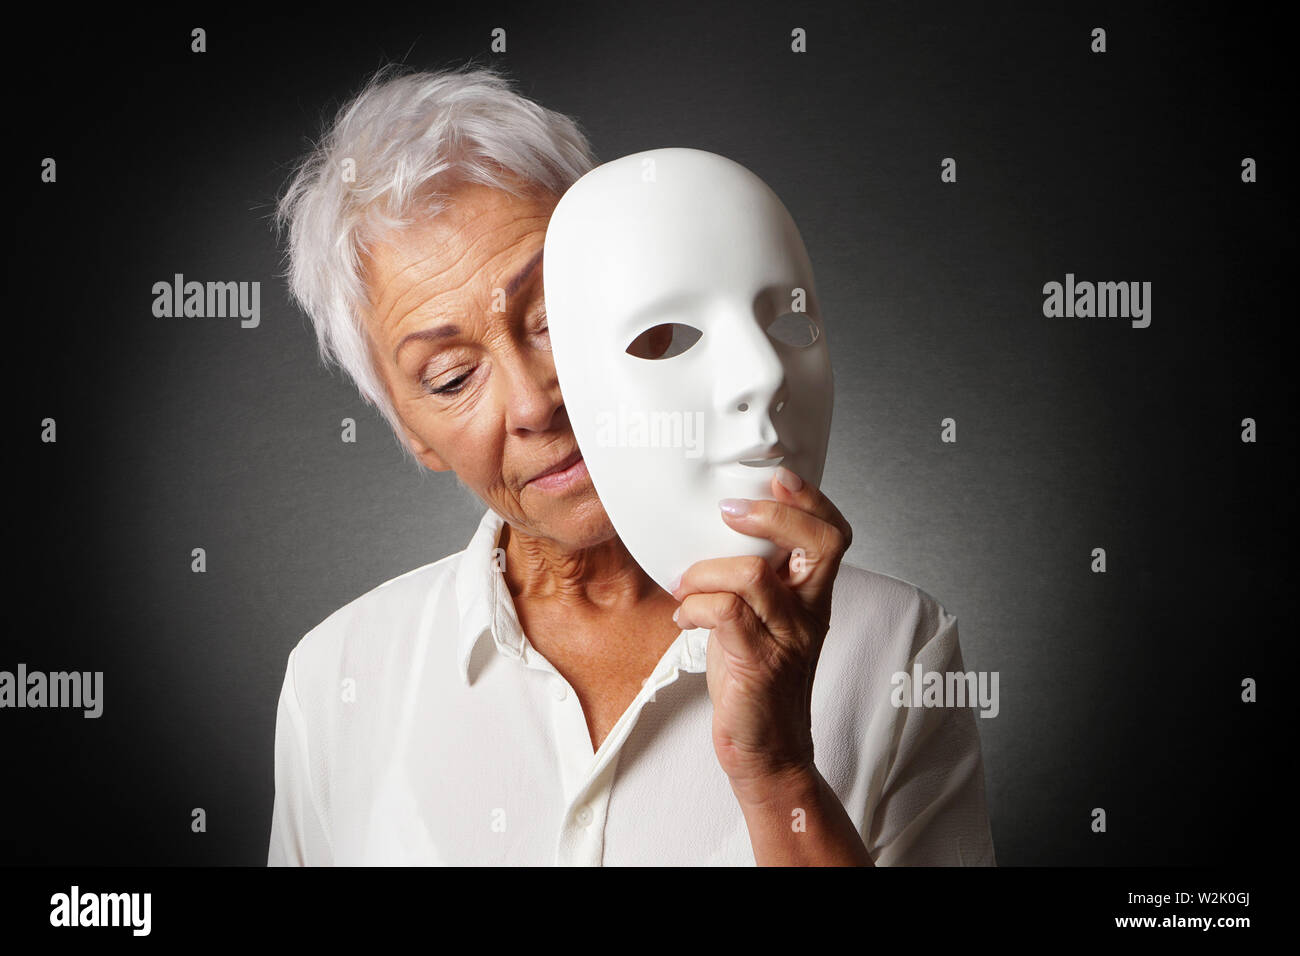 Ältere Frau mit weißen Haaren versteckt trauriges Gesicht hinter der Maske - Depression oder Persönlichkeit Konzept Stockfoto